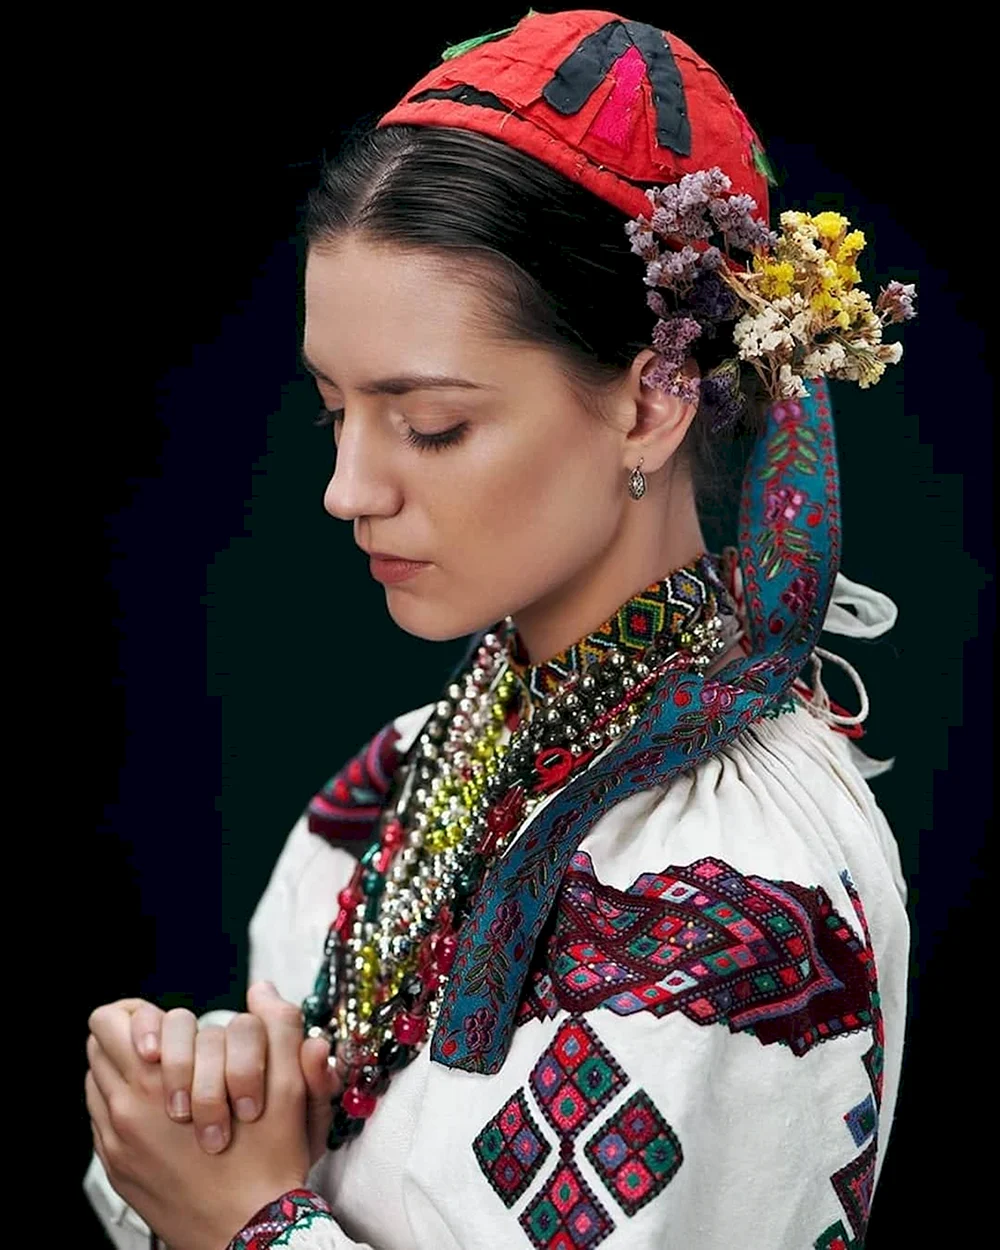 Native Russian Folklore